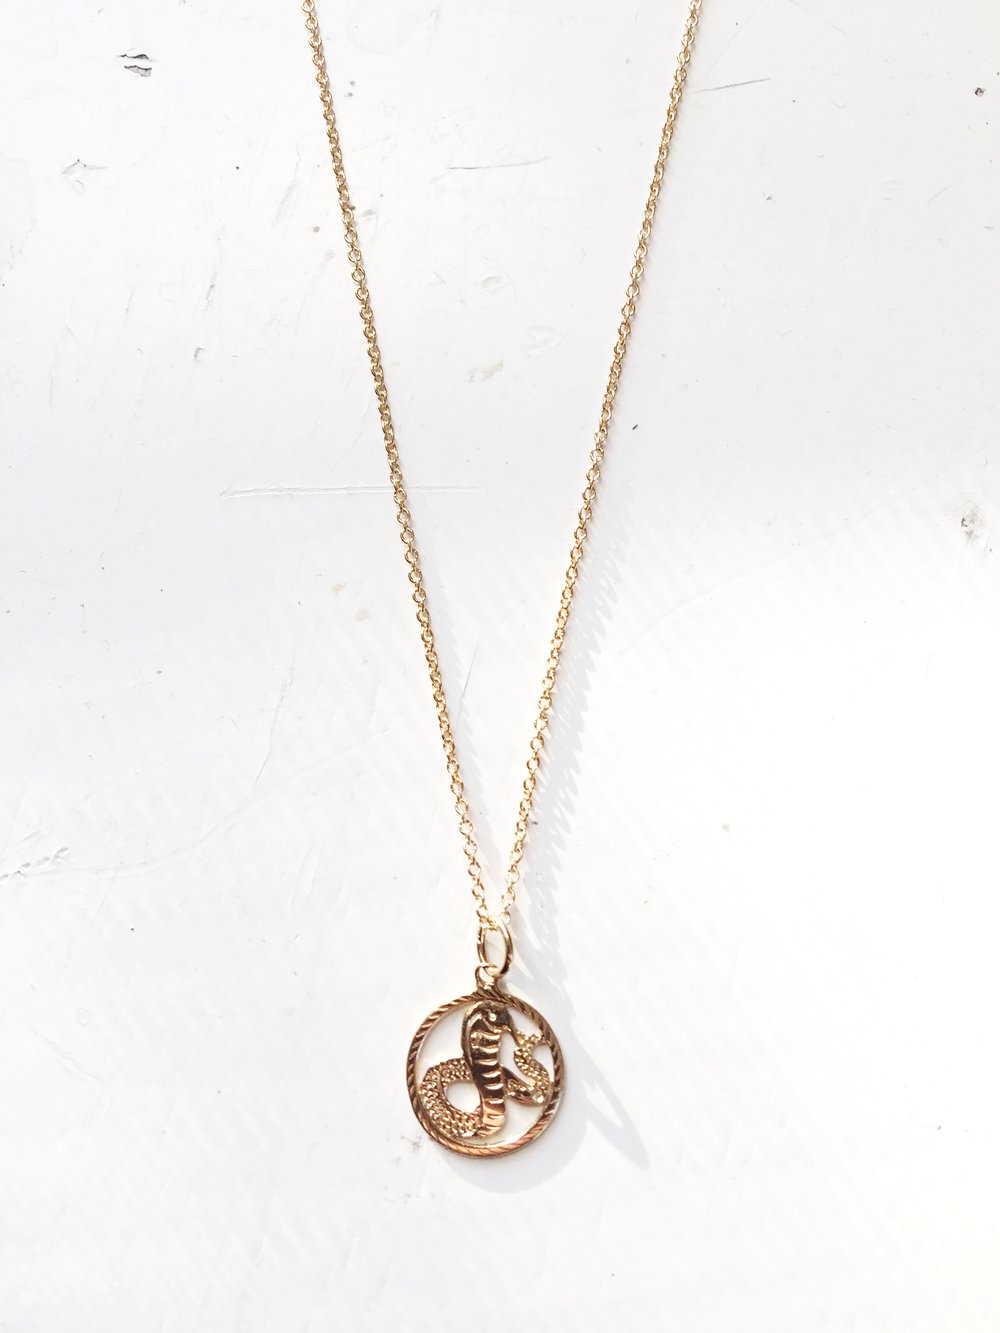 Solid Gold Snake Necklace 14k